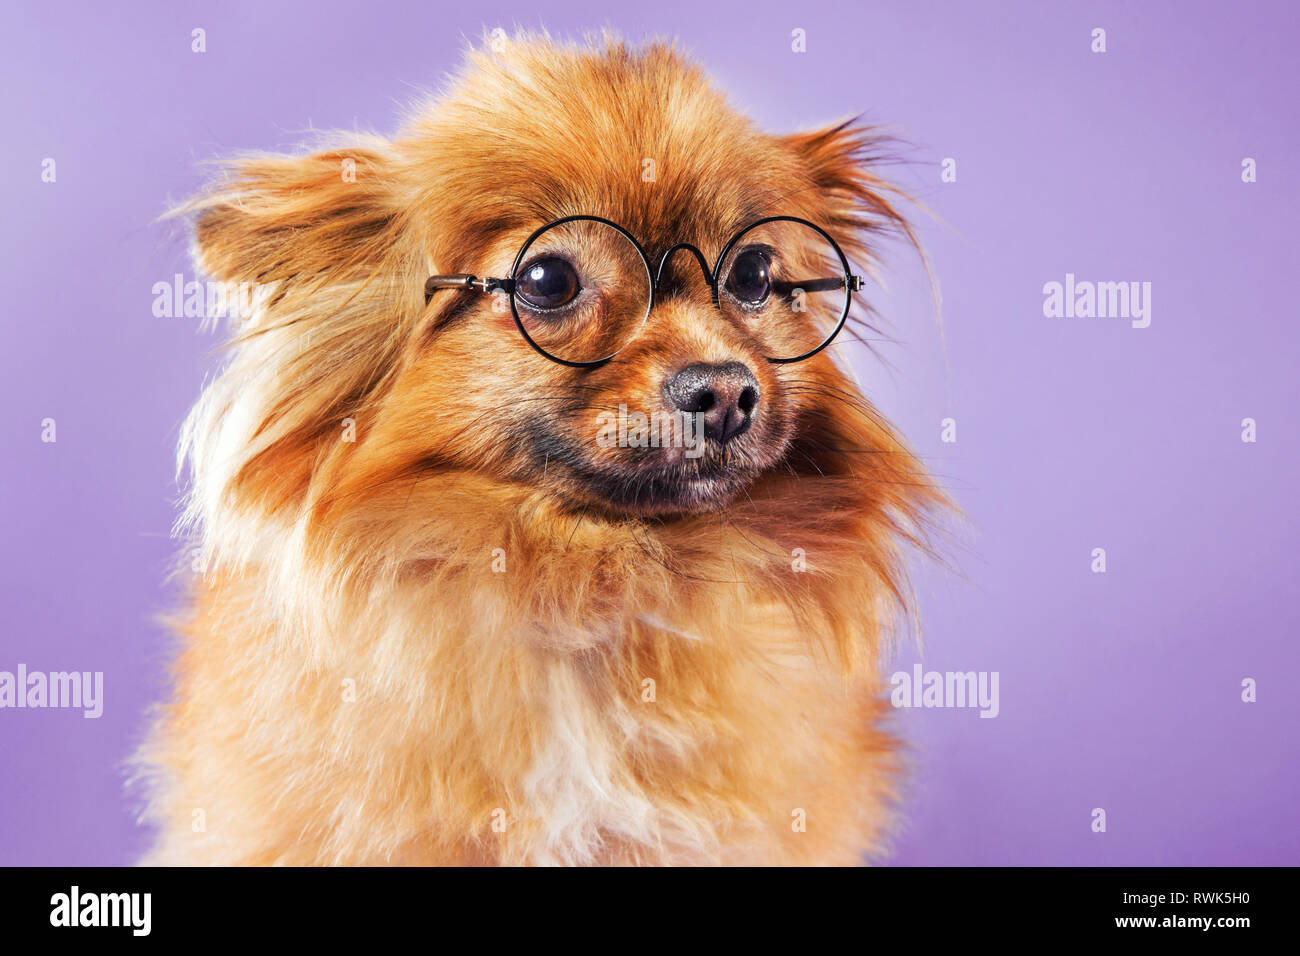 Close-up retrato de un perro Pomerania el uso de anteojos y mirando la cámara, fotografiado en un fondo de colores. Foto de stock